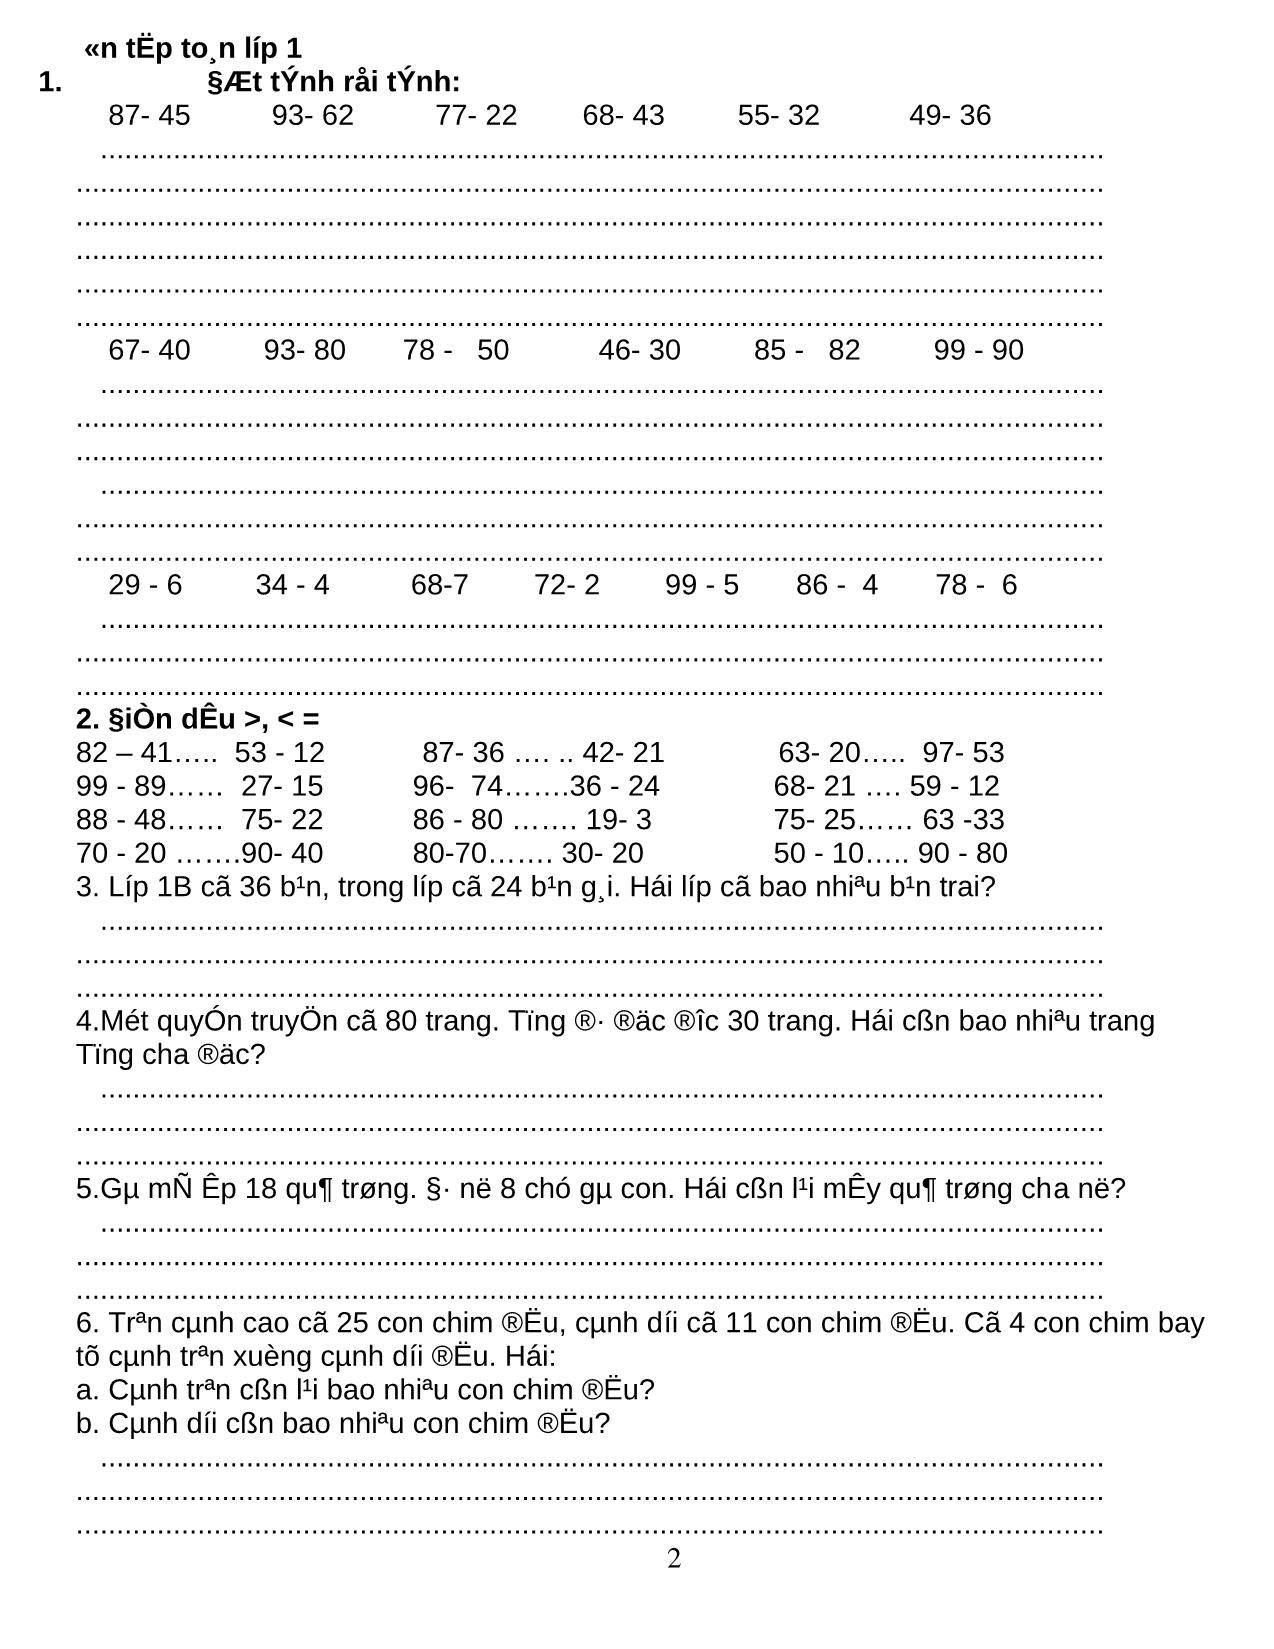 Ôn tập môn Toán + Tiếng Việt lớp 1 trang 2